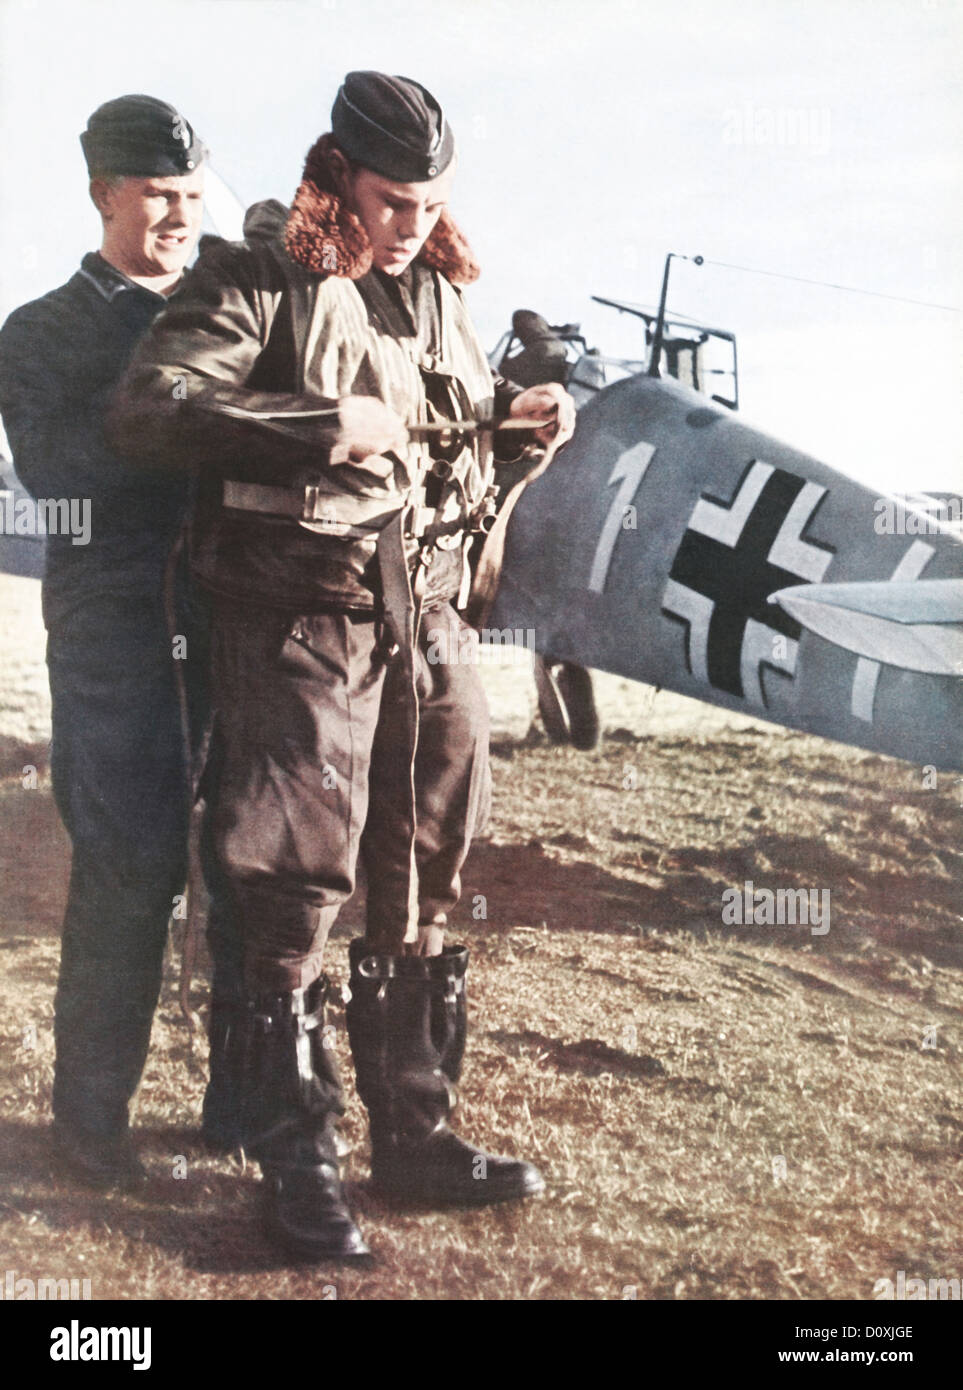 Allemand, Luftwaffe, pilote, Stuka, départ, avion, de l'armée, la seconde guerre mondiale, l'Allemagne, 1940 Banque D'Images